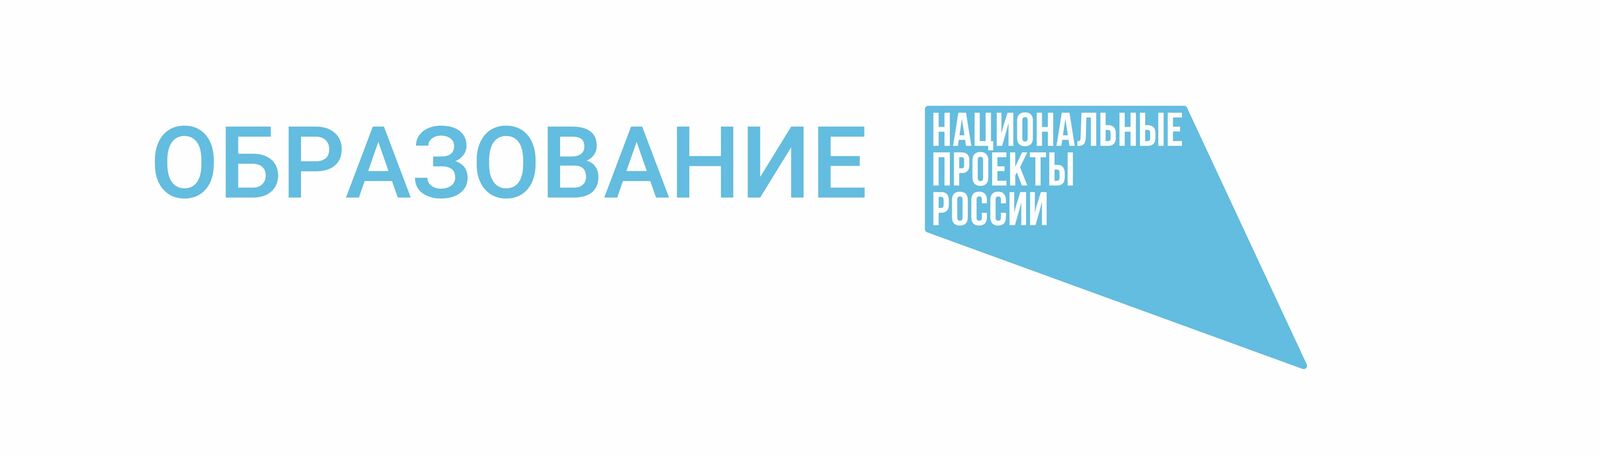 Глава Башкирии Радий Хабиров рассказал, как регион развивает систему профобразования